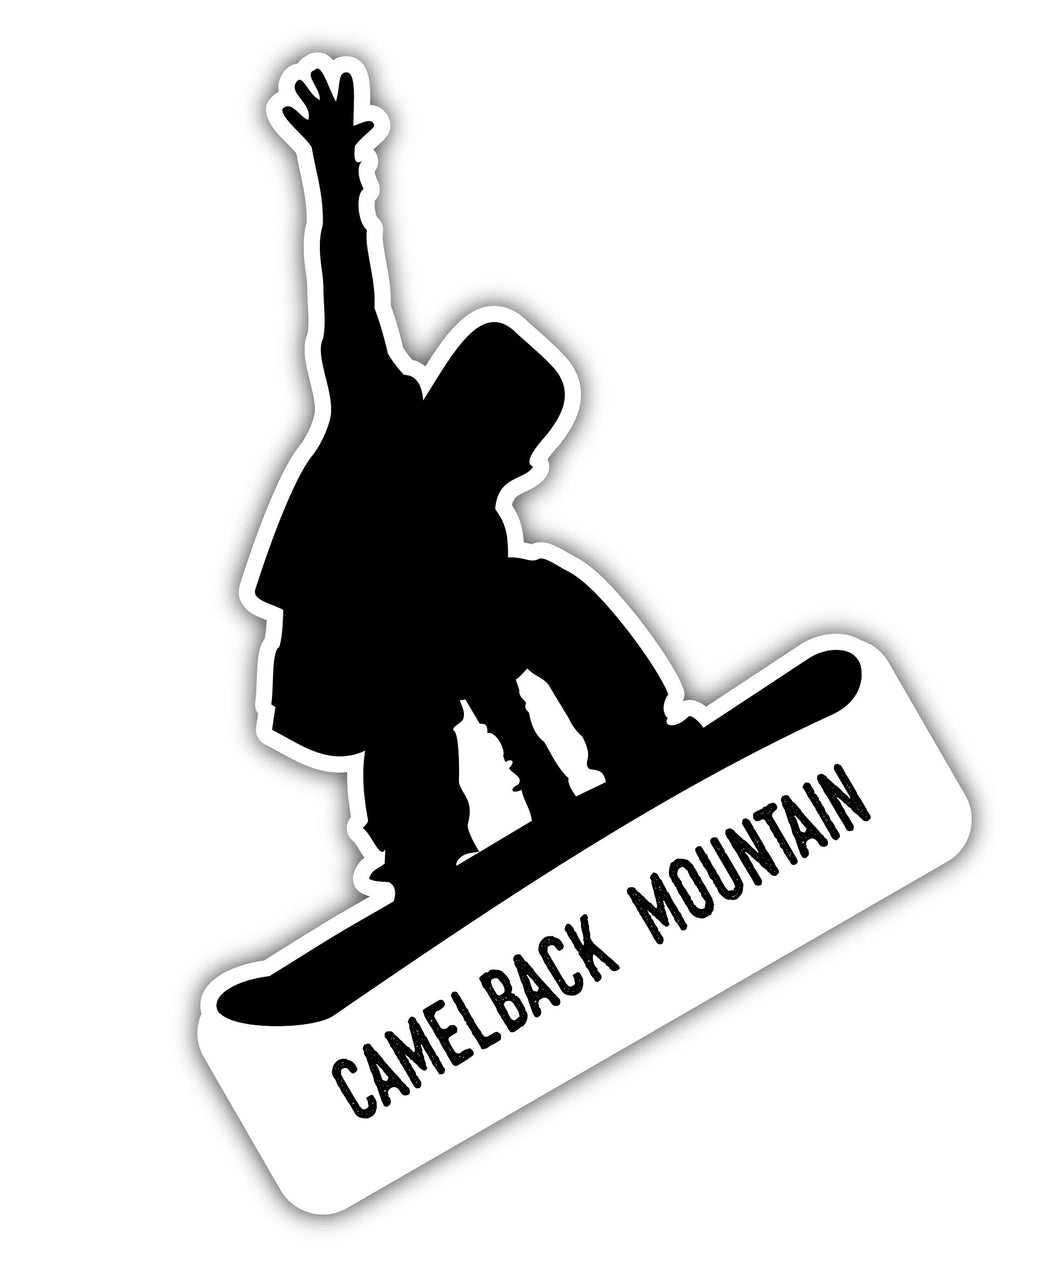 Camelback Mountain Pennsylvania Ski Adventures Souvenir 4 Inch Vinyl Decal Sticker Board Design